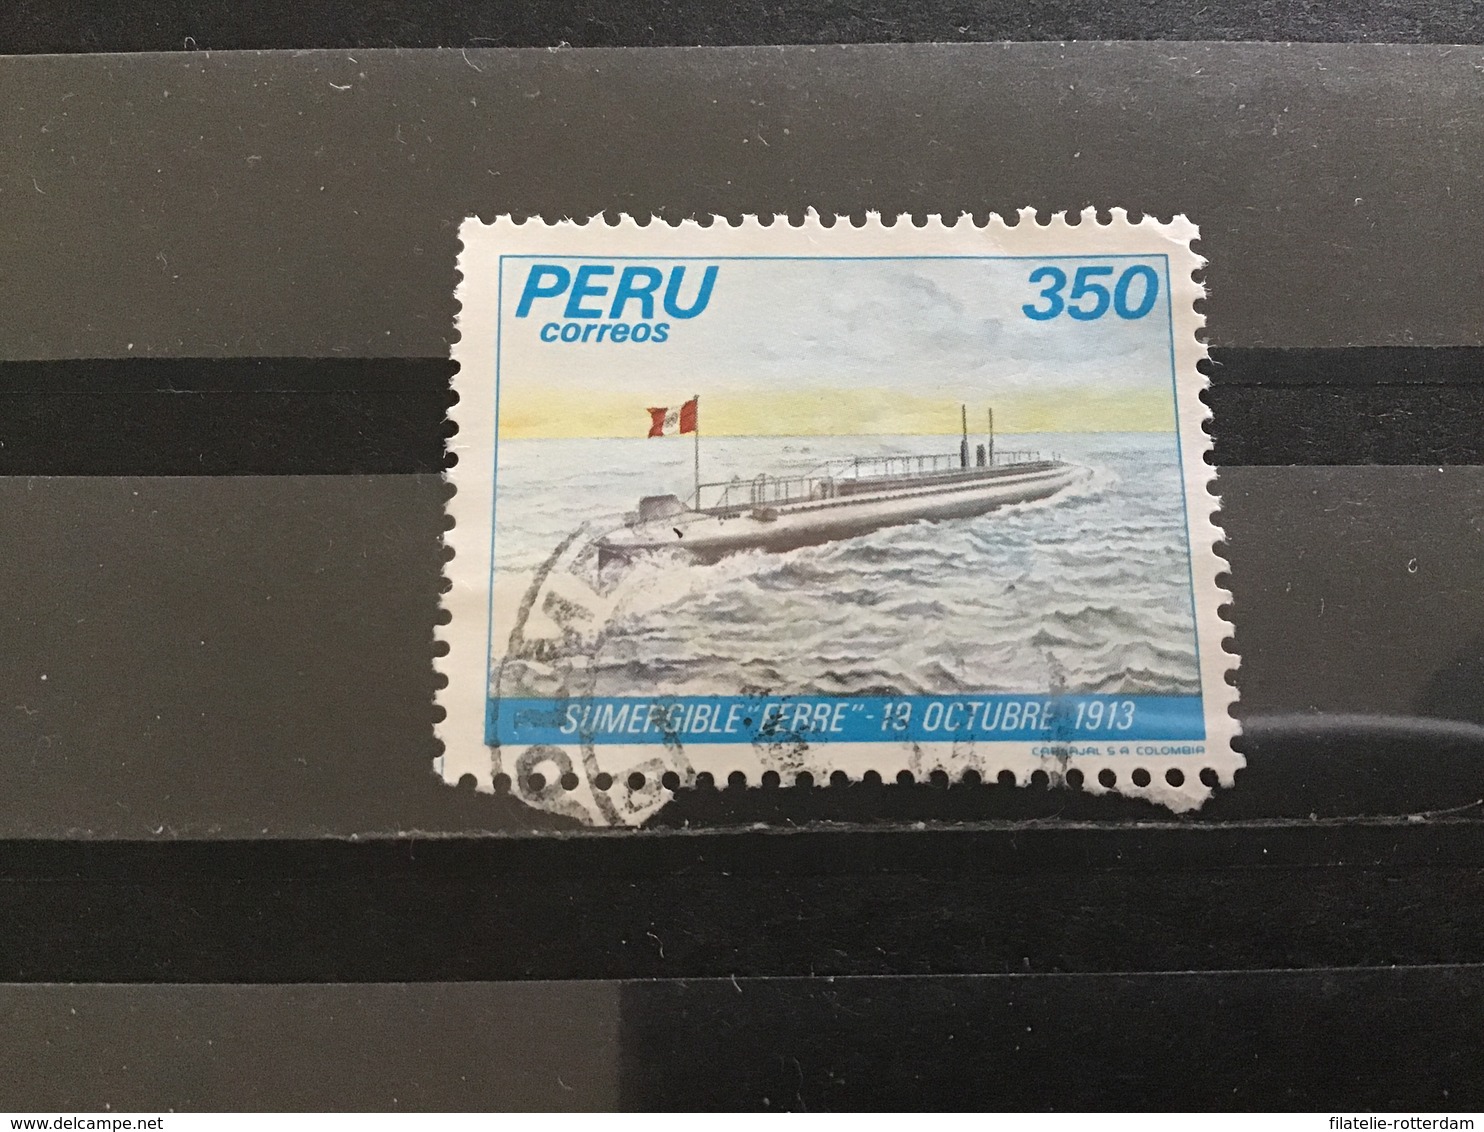 Peru - Onderzeeër Ferre (350) 1983 - Peru